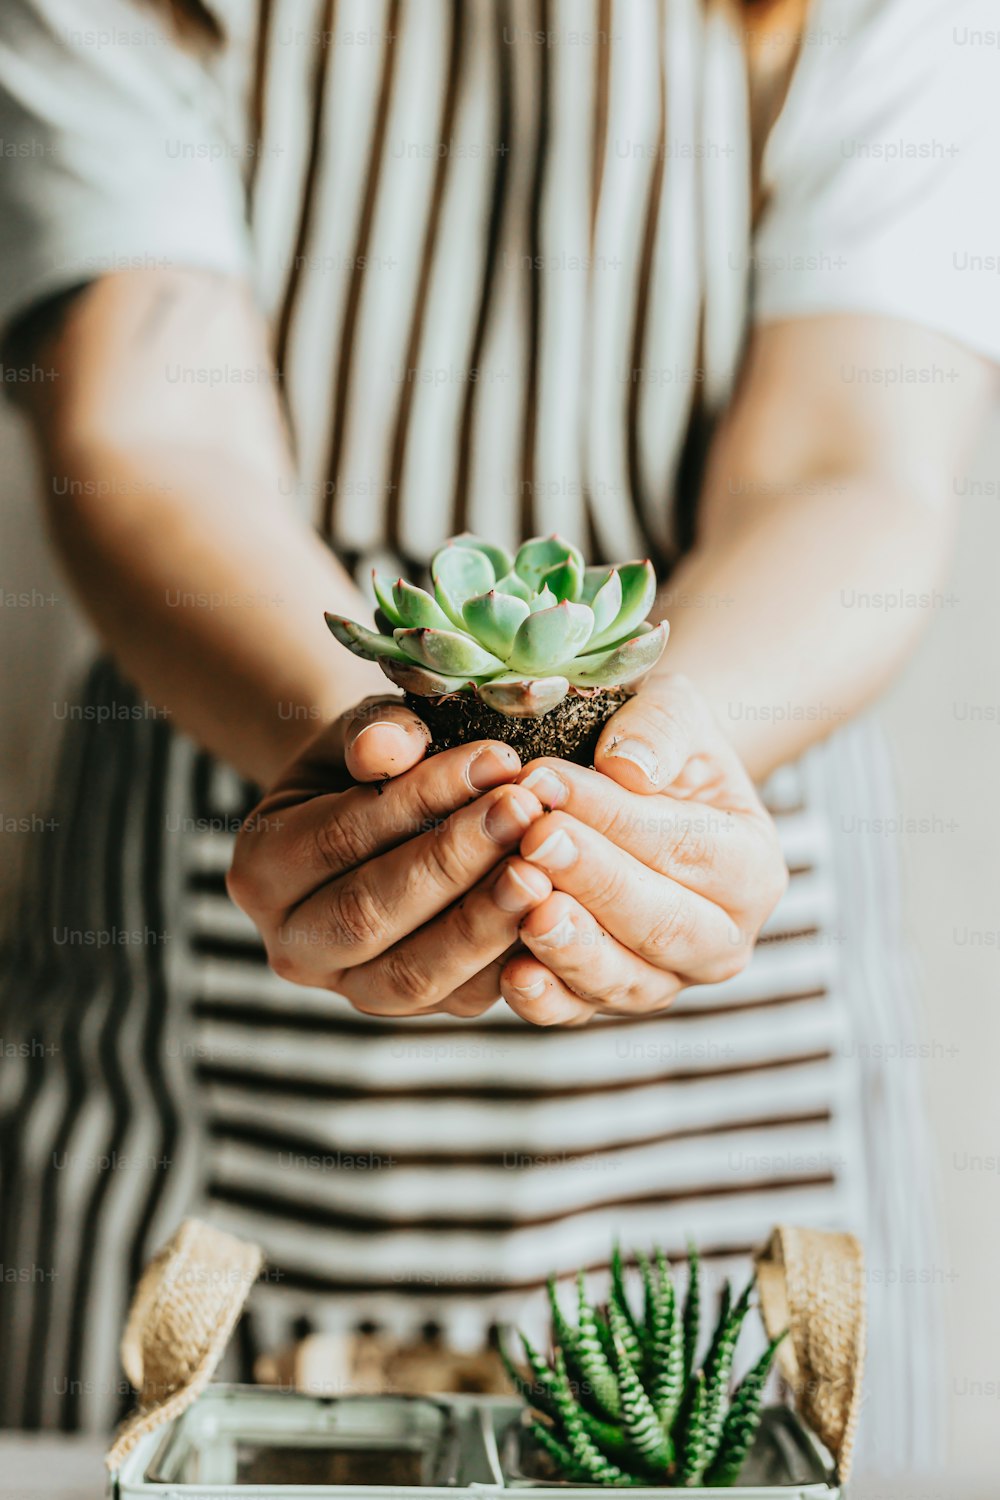 una persona sosteniendo una pequeña planta suculenta en sus manos